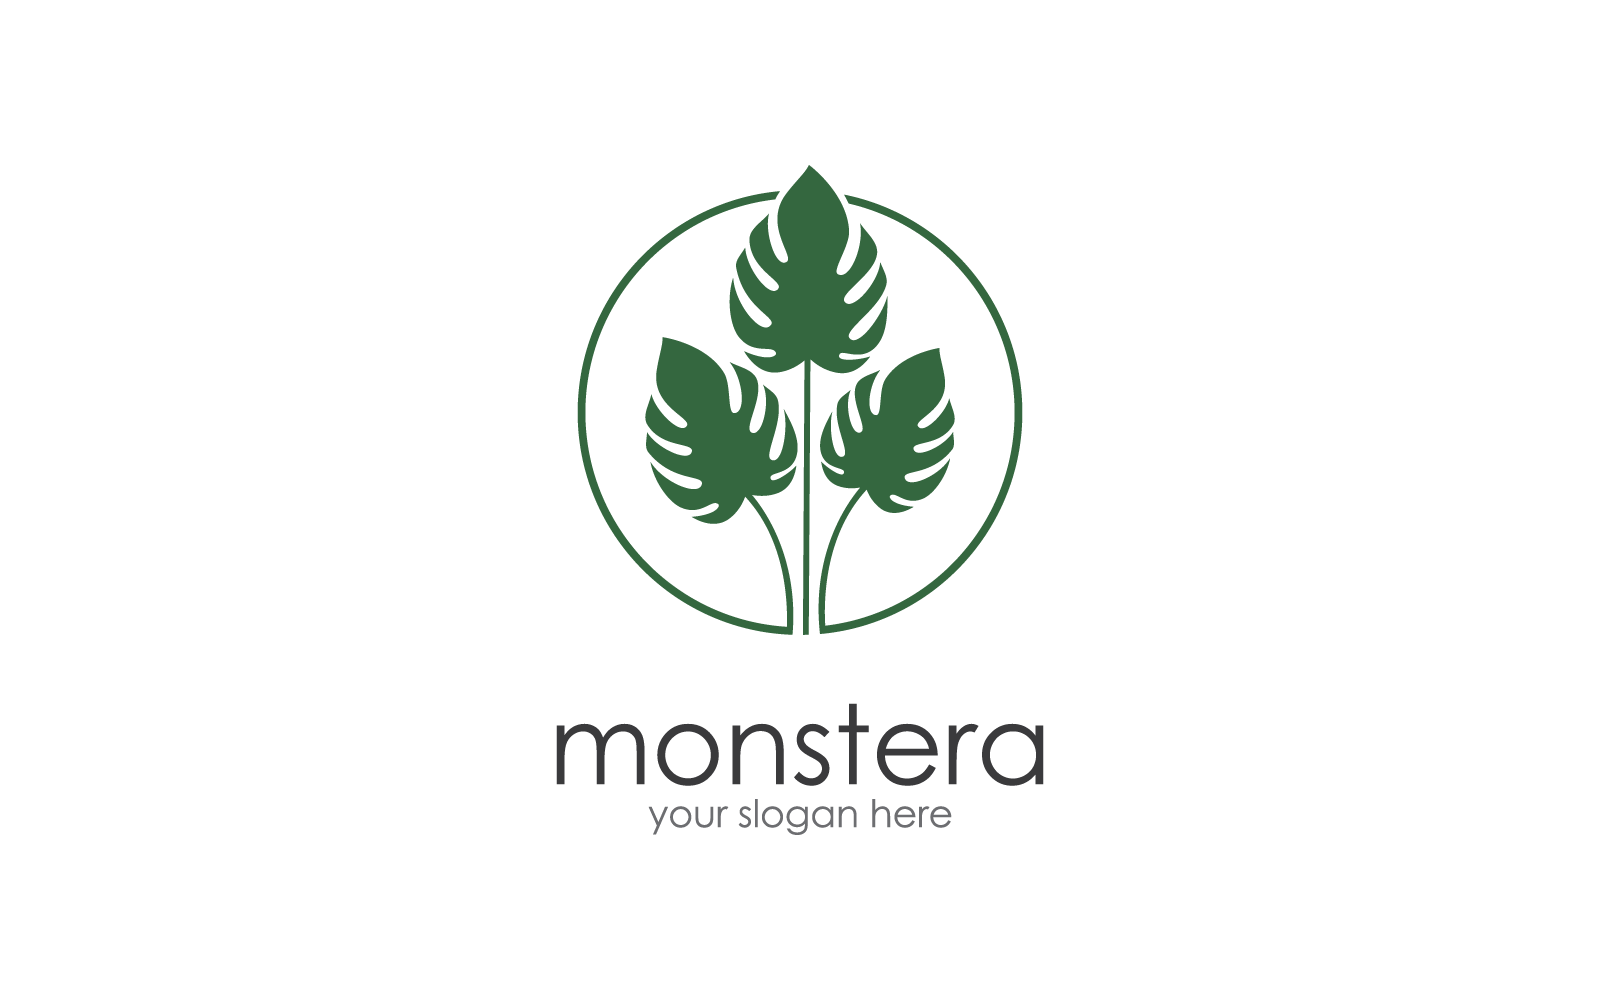 Monstera leaf vector flat design logo illustration Logo Template